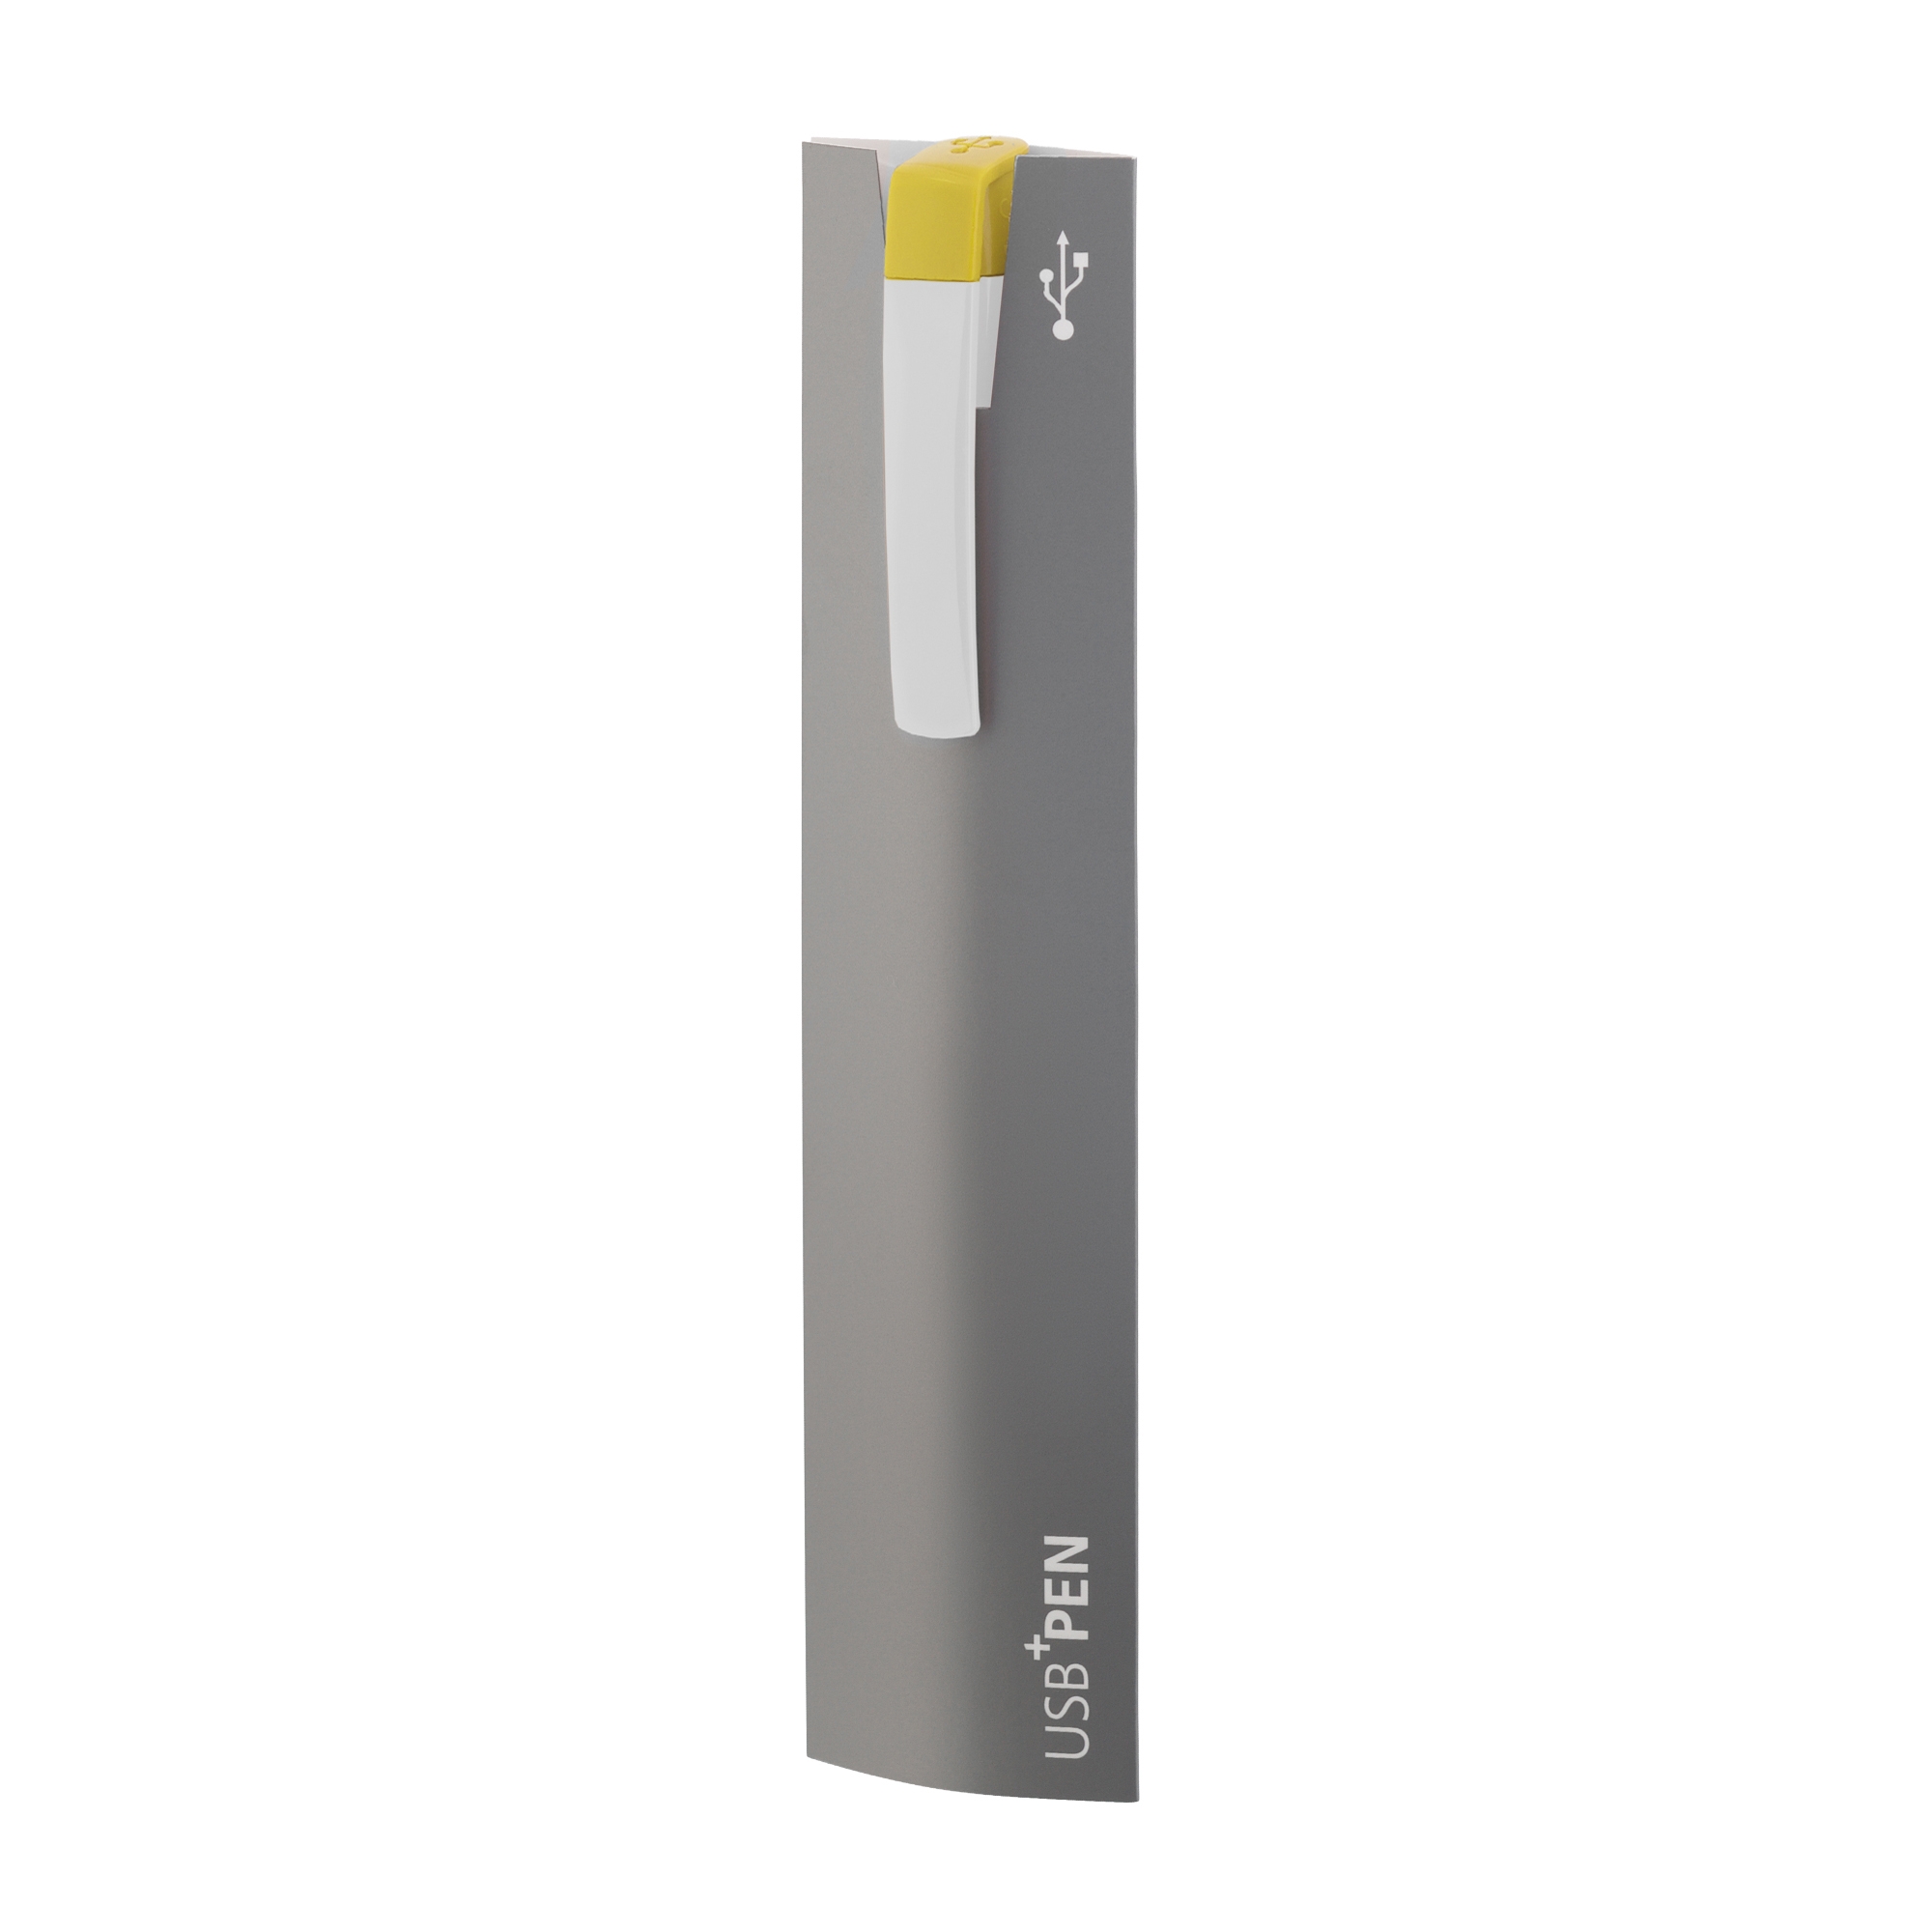 Ручка с флеш-картой USB 8GB «TURNUS M», белый, пластик/металл